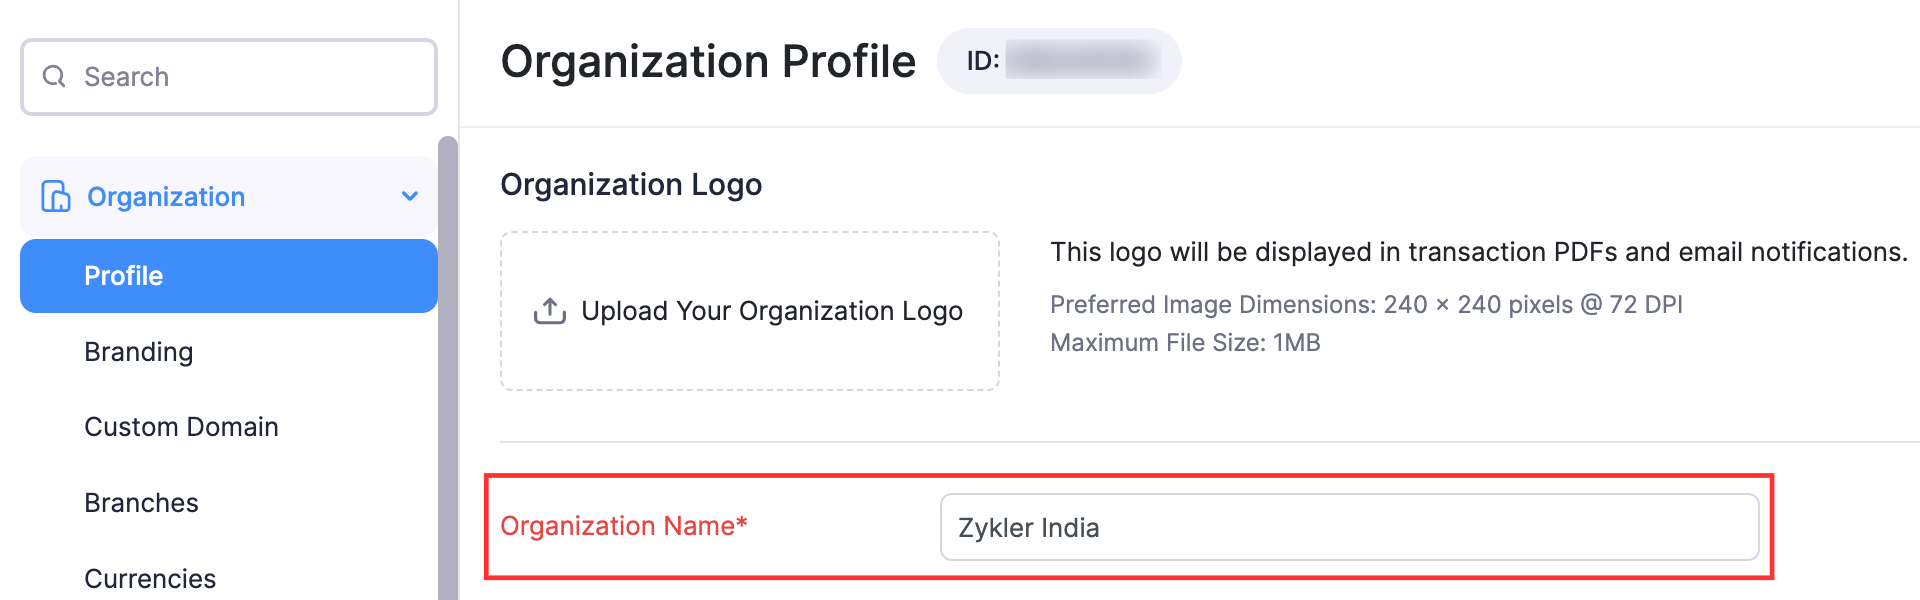 Change Organization Name